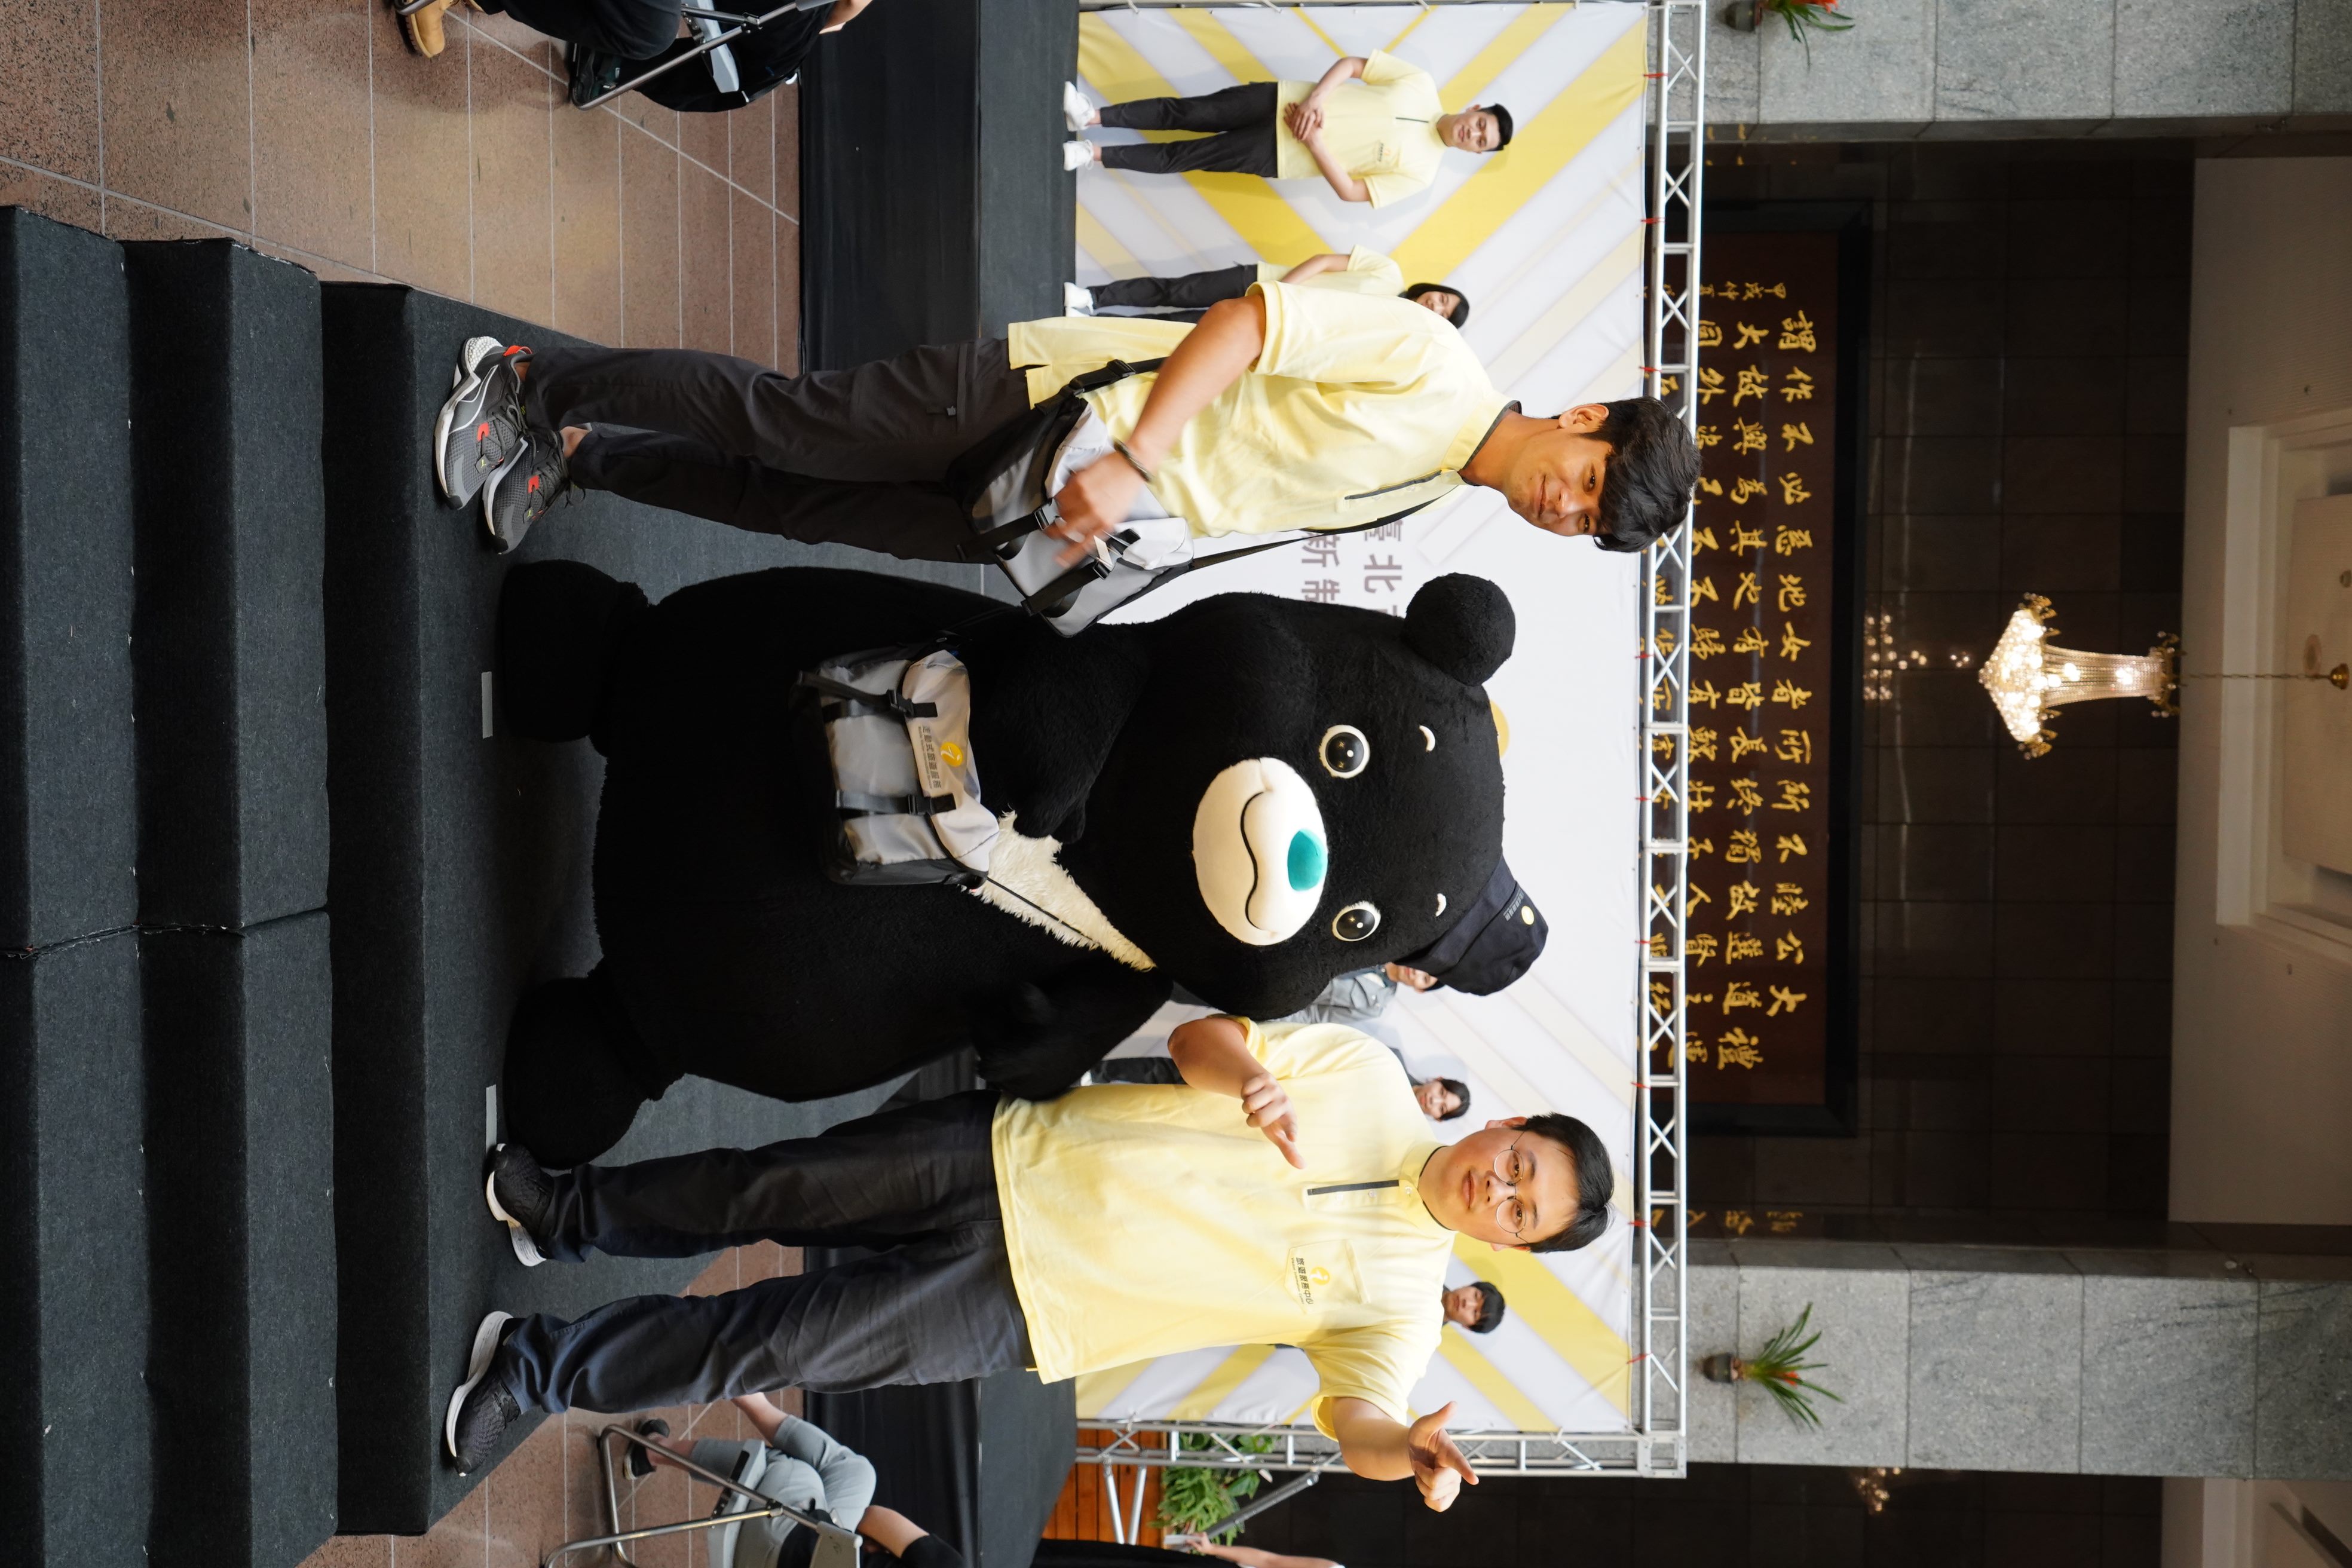 楊子儀與觀傳局長劉奕霆及熊讚穿著新制服亮相